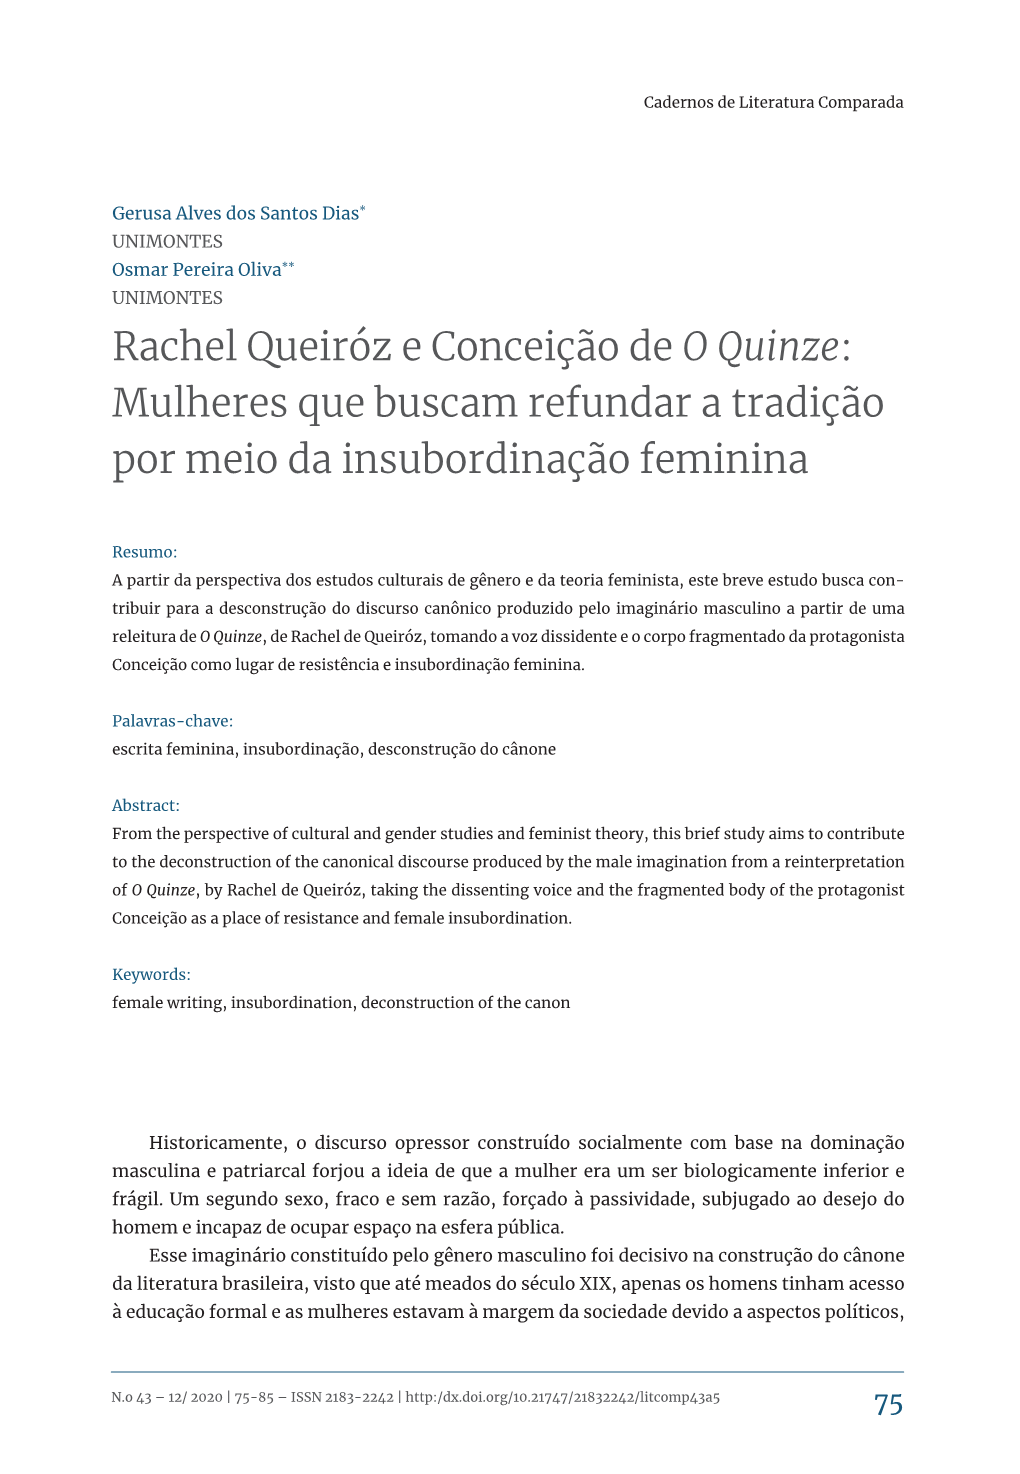 Rachel Queiróz E Conceição De O Quinze: Mulheres Que Buscam Refundar a Tradição Por Meio Da Insubordinação Feminina